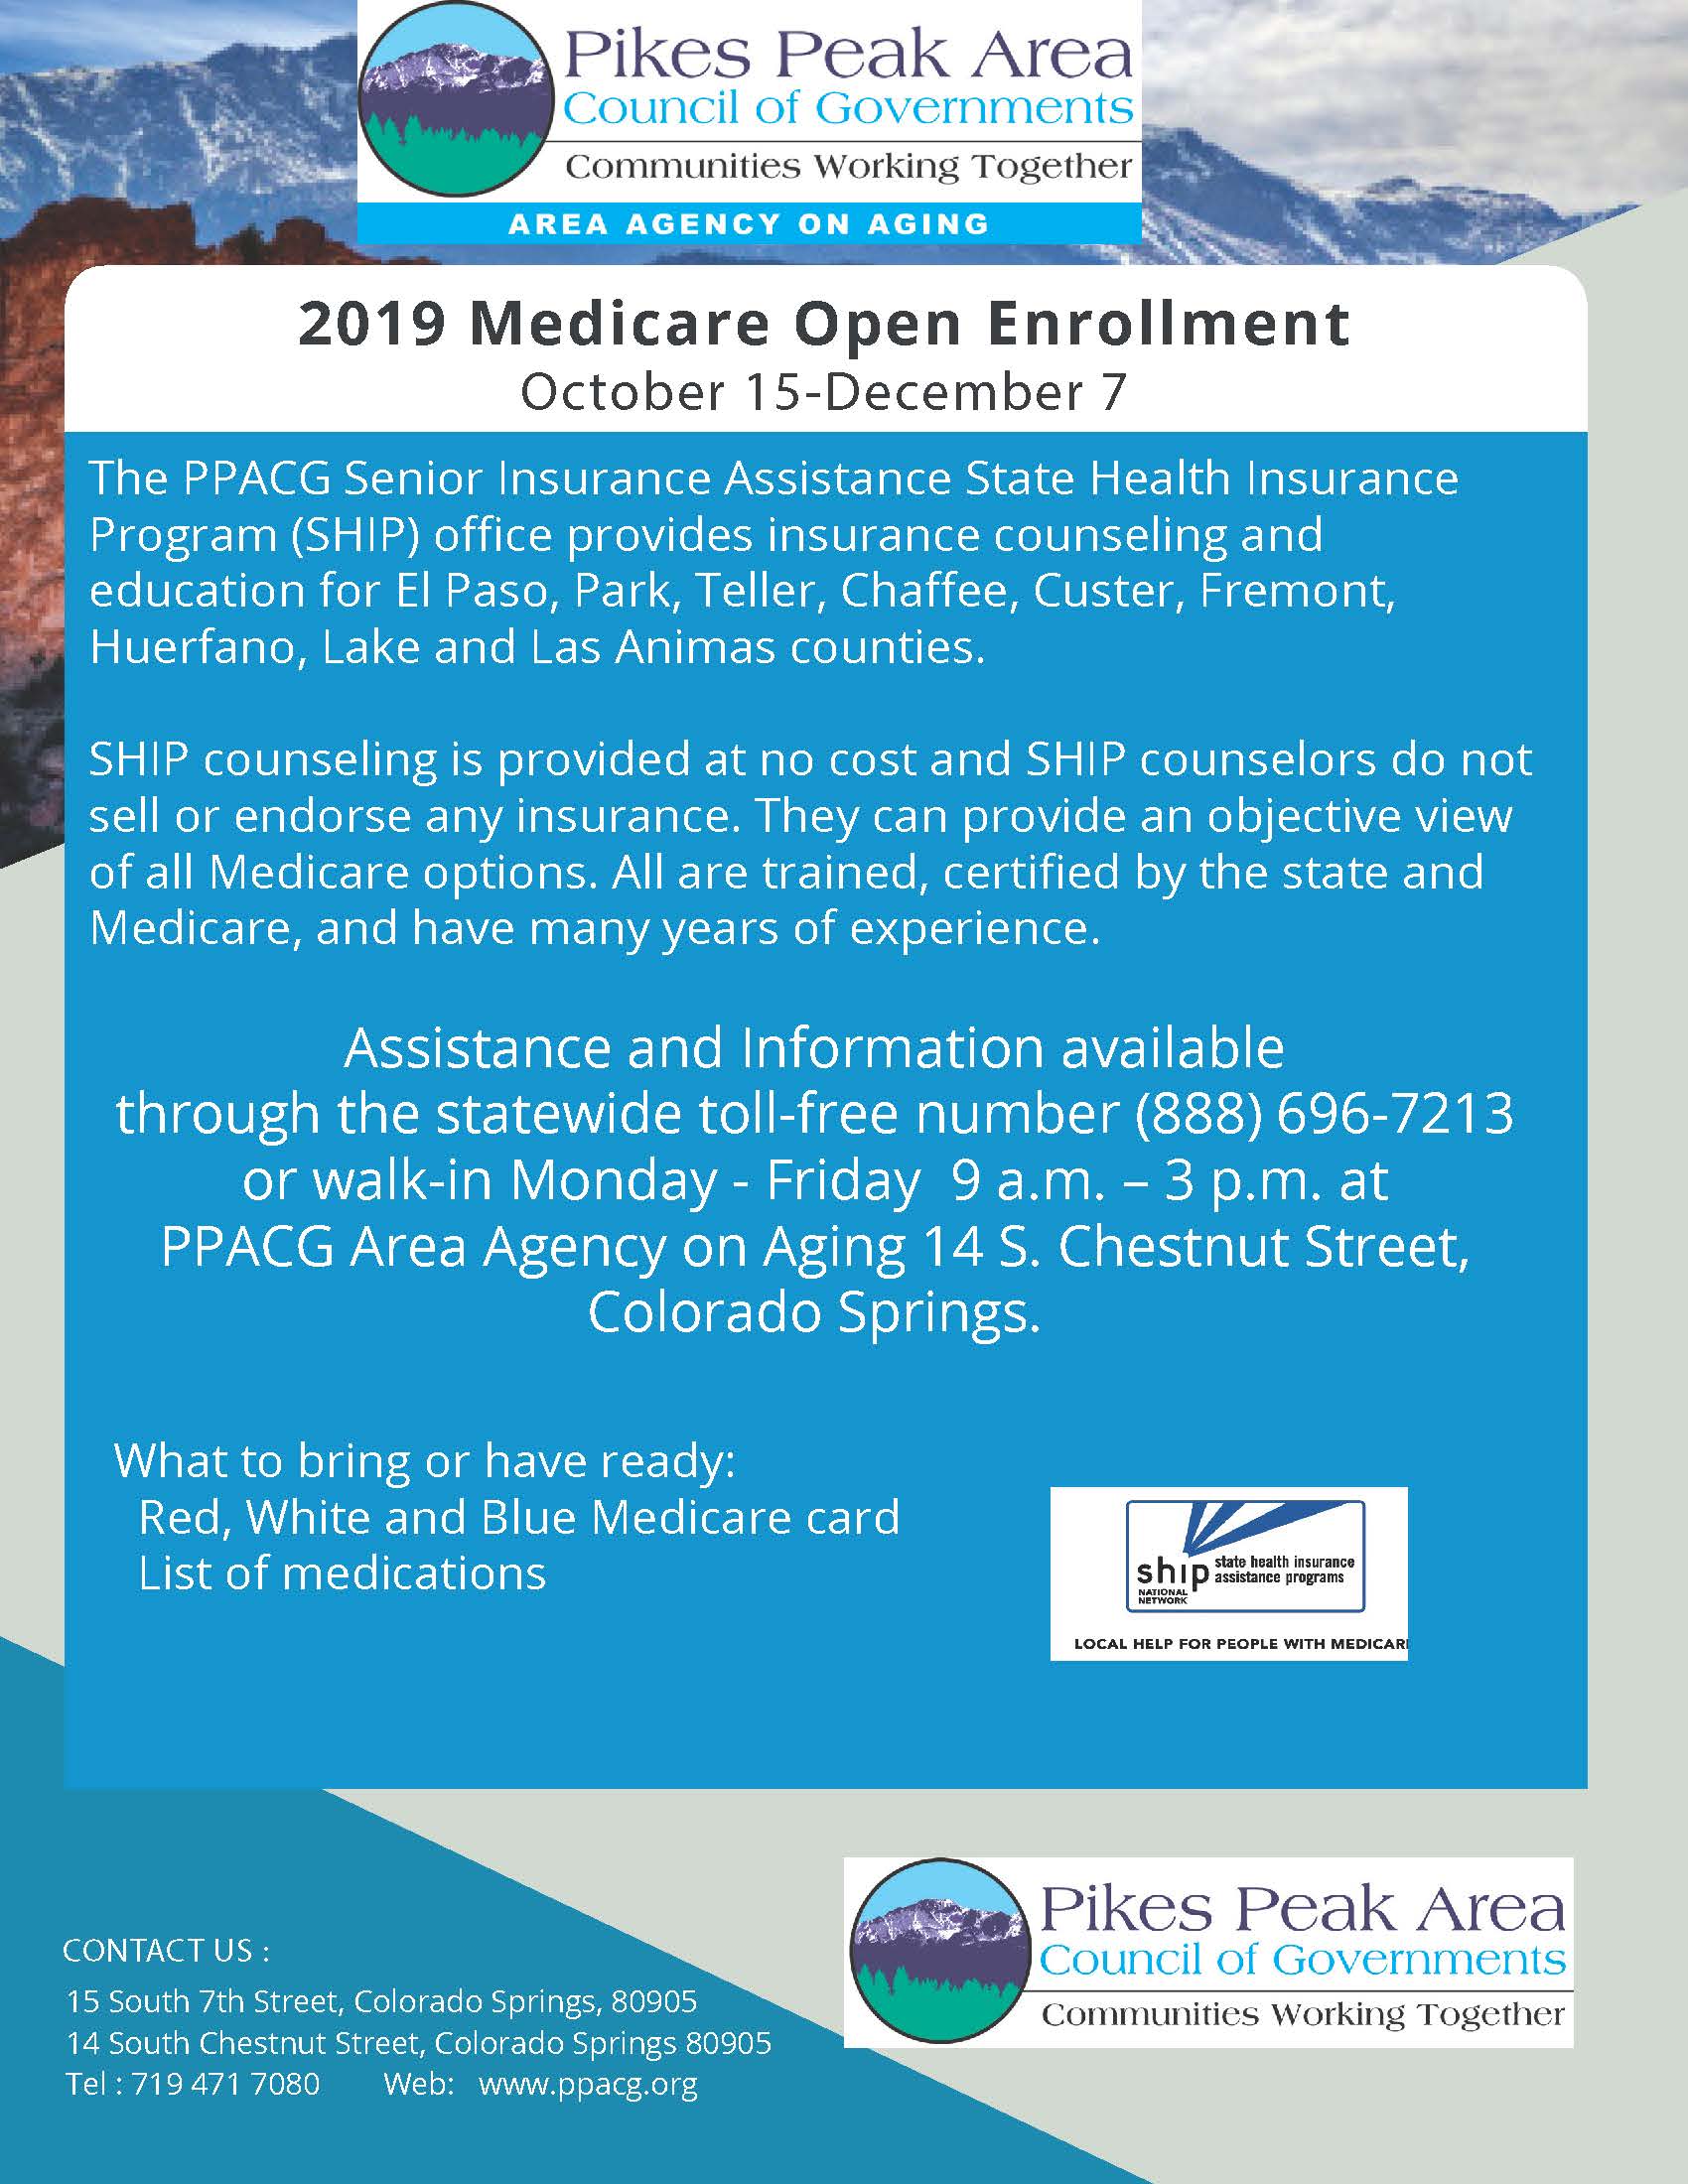 2019 Medicare Open Enrollment Period